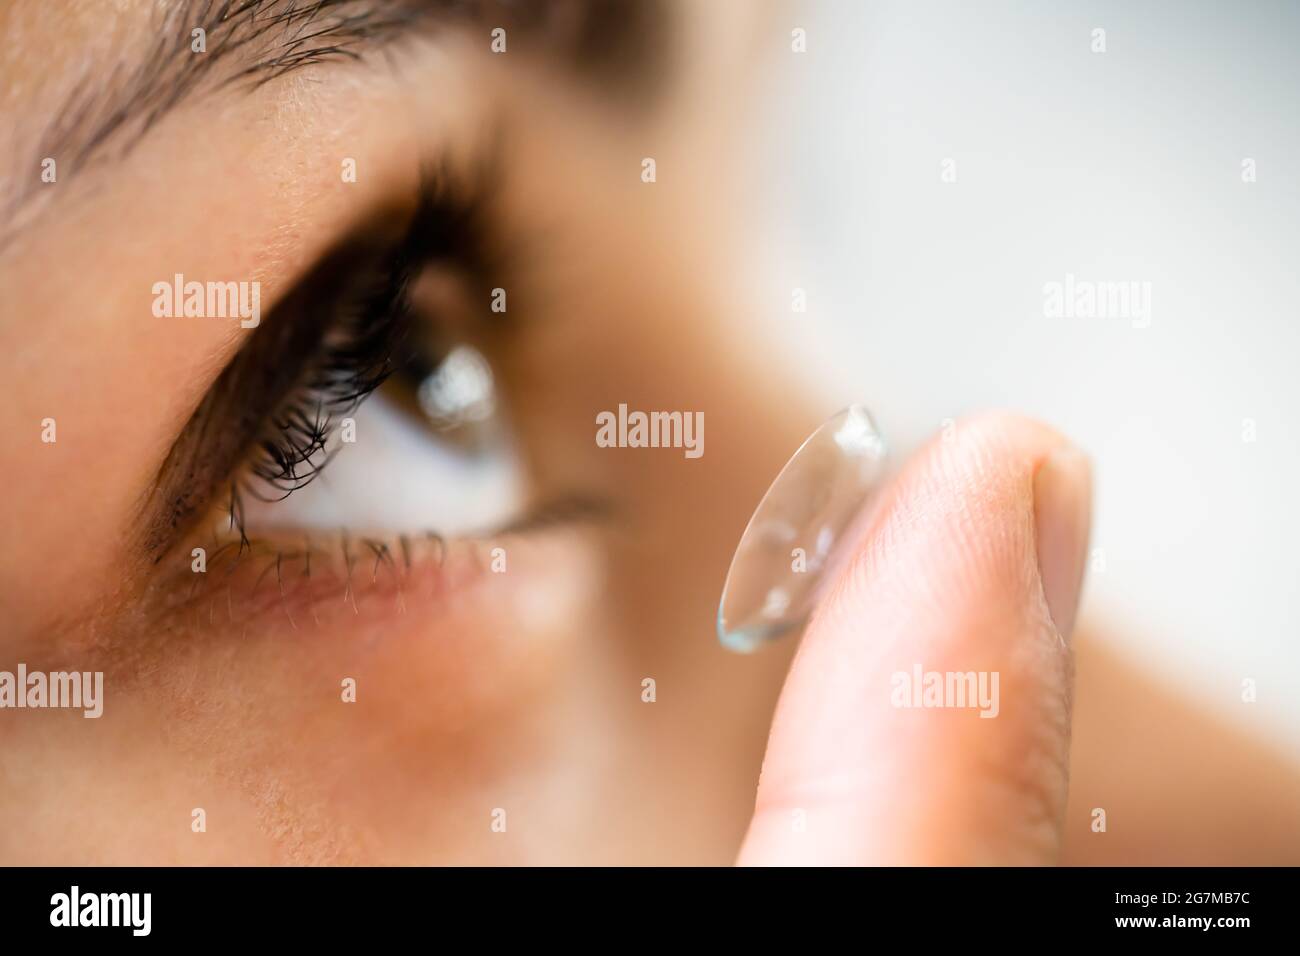 Kontaktlinse In Das Auge Einsetzen. Augenbrille Für Die Augenheilkunde Stockfoto